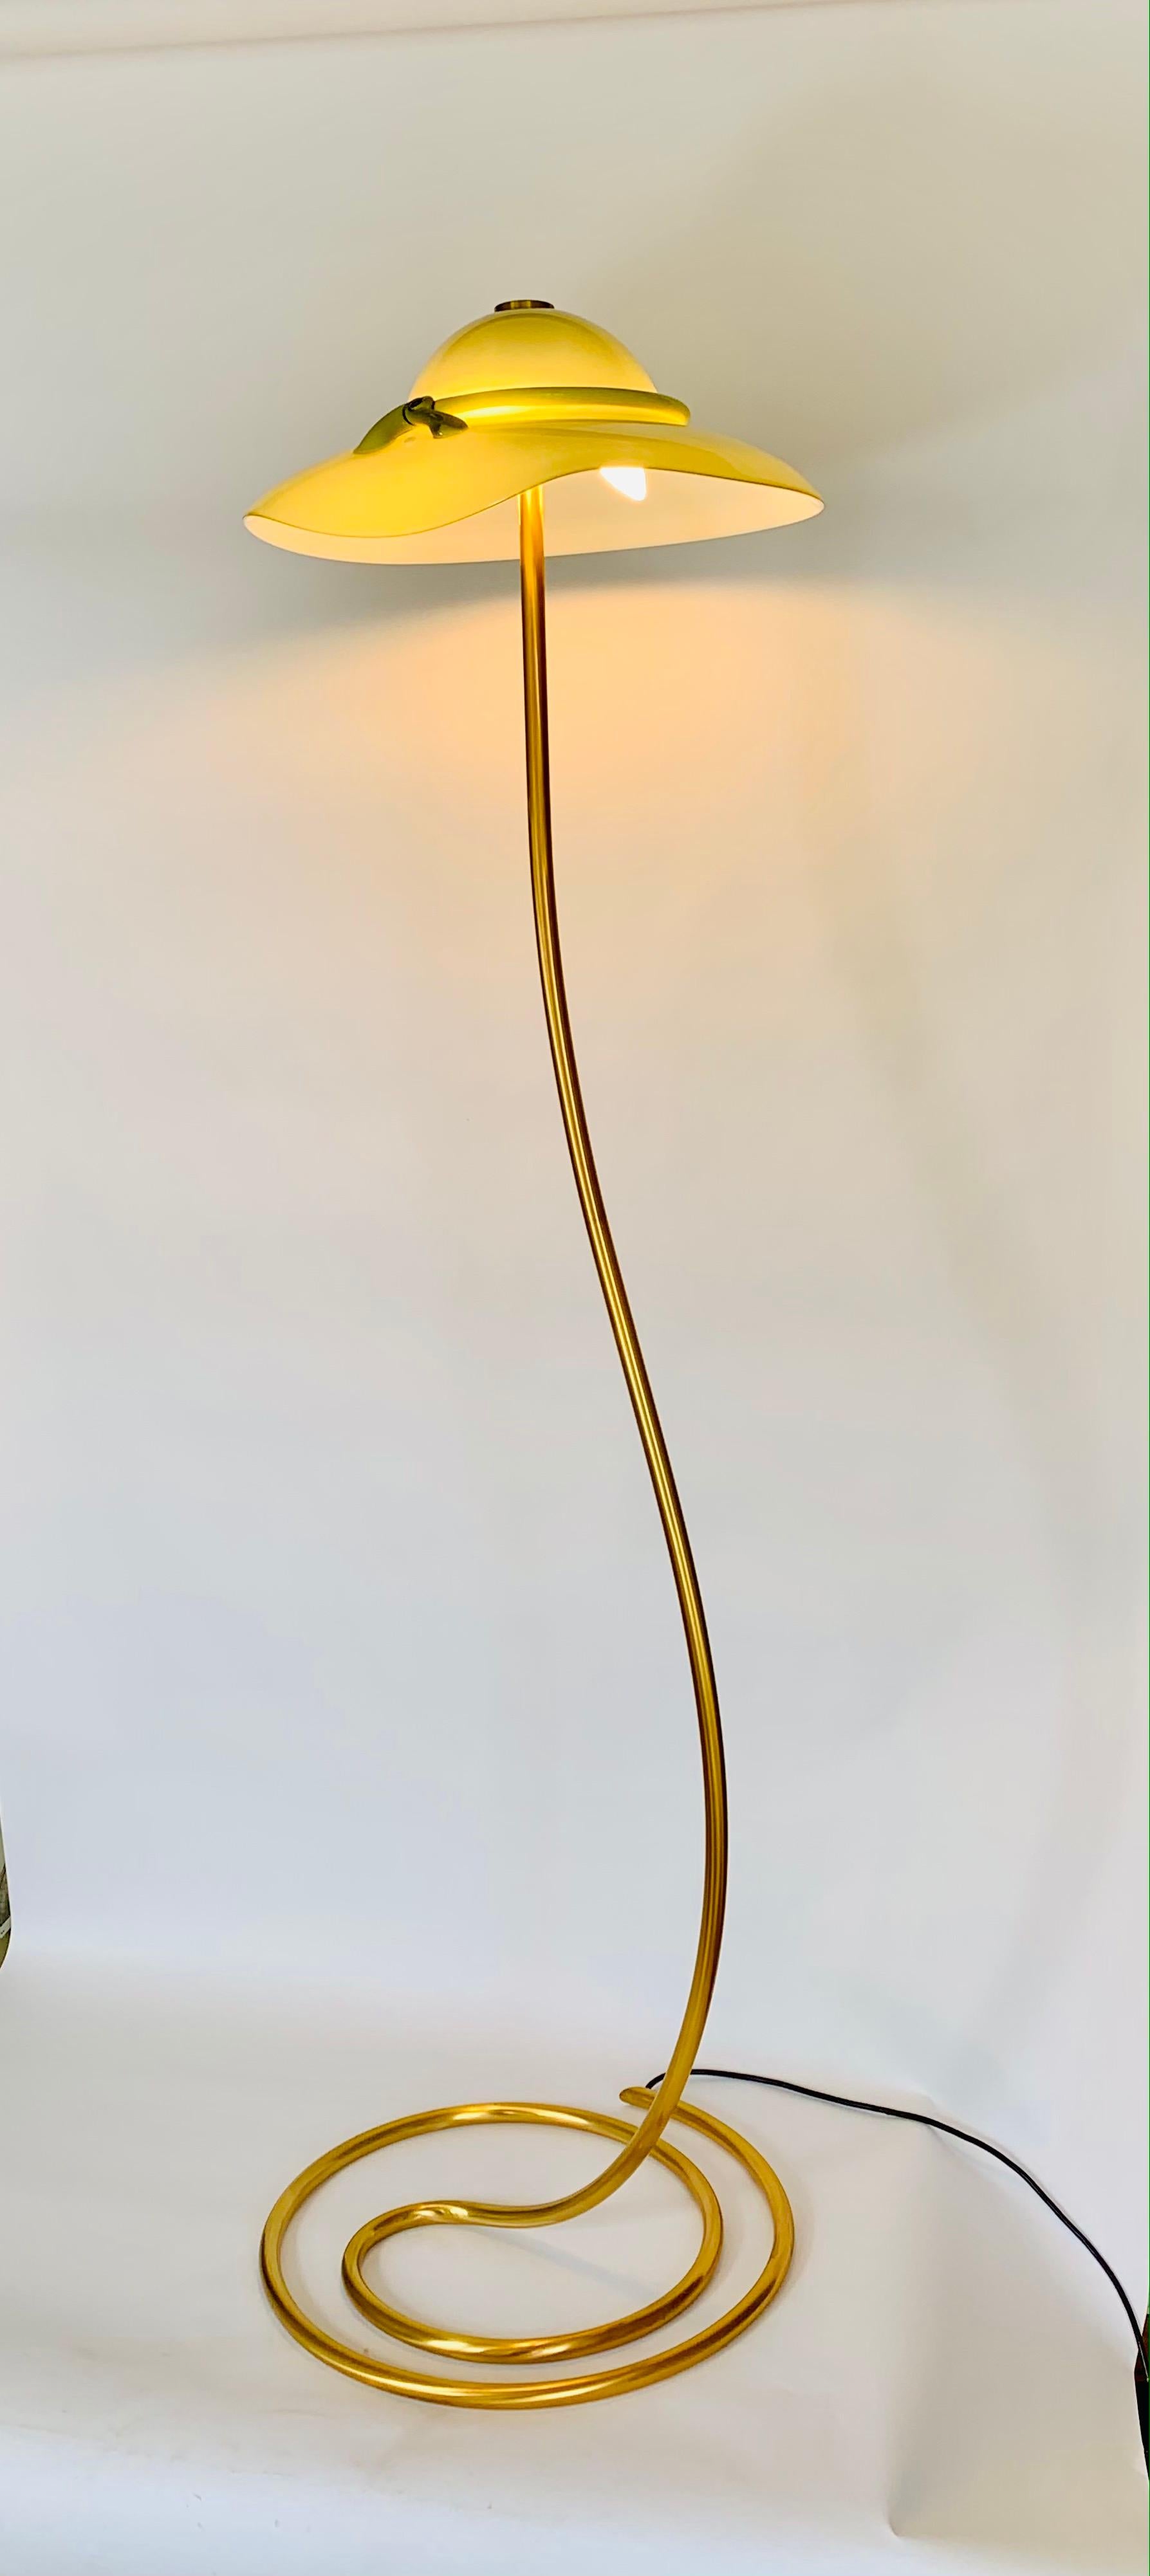 Italian Murano Glass Floor Lamp Romantica Model by La Murrina For Sale 3